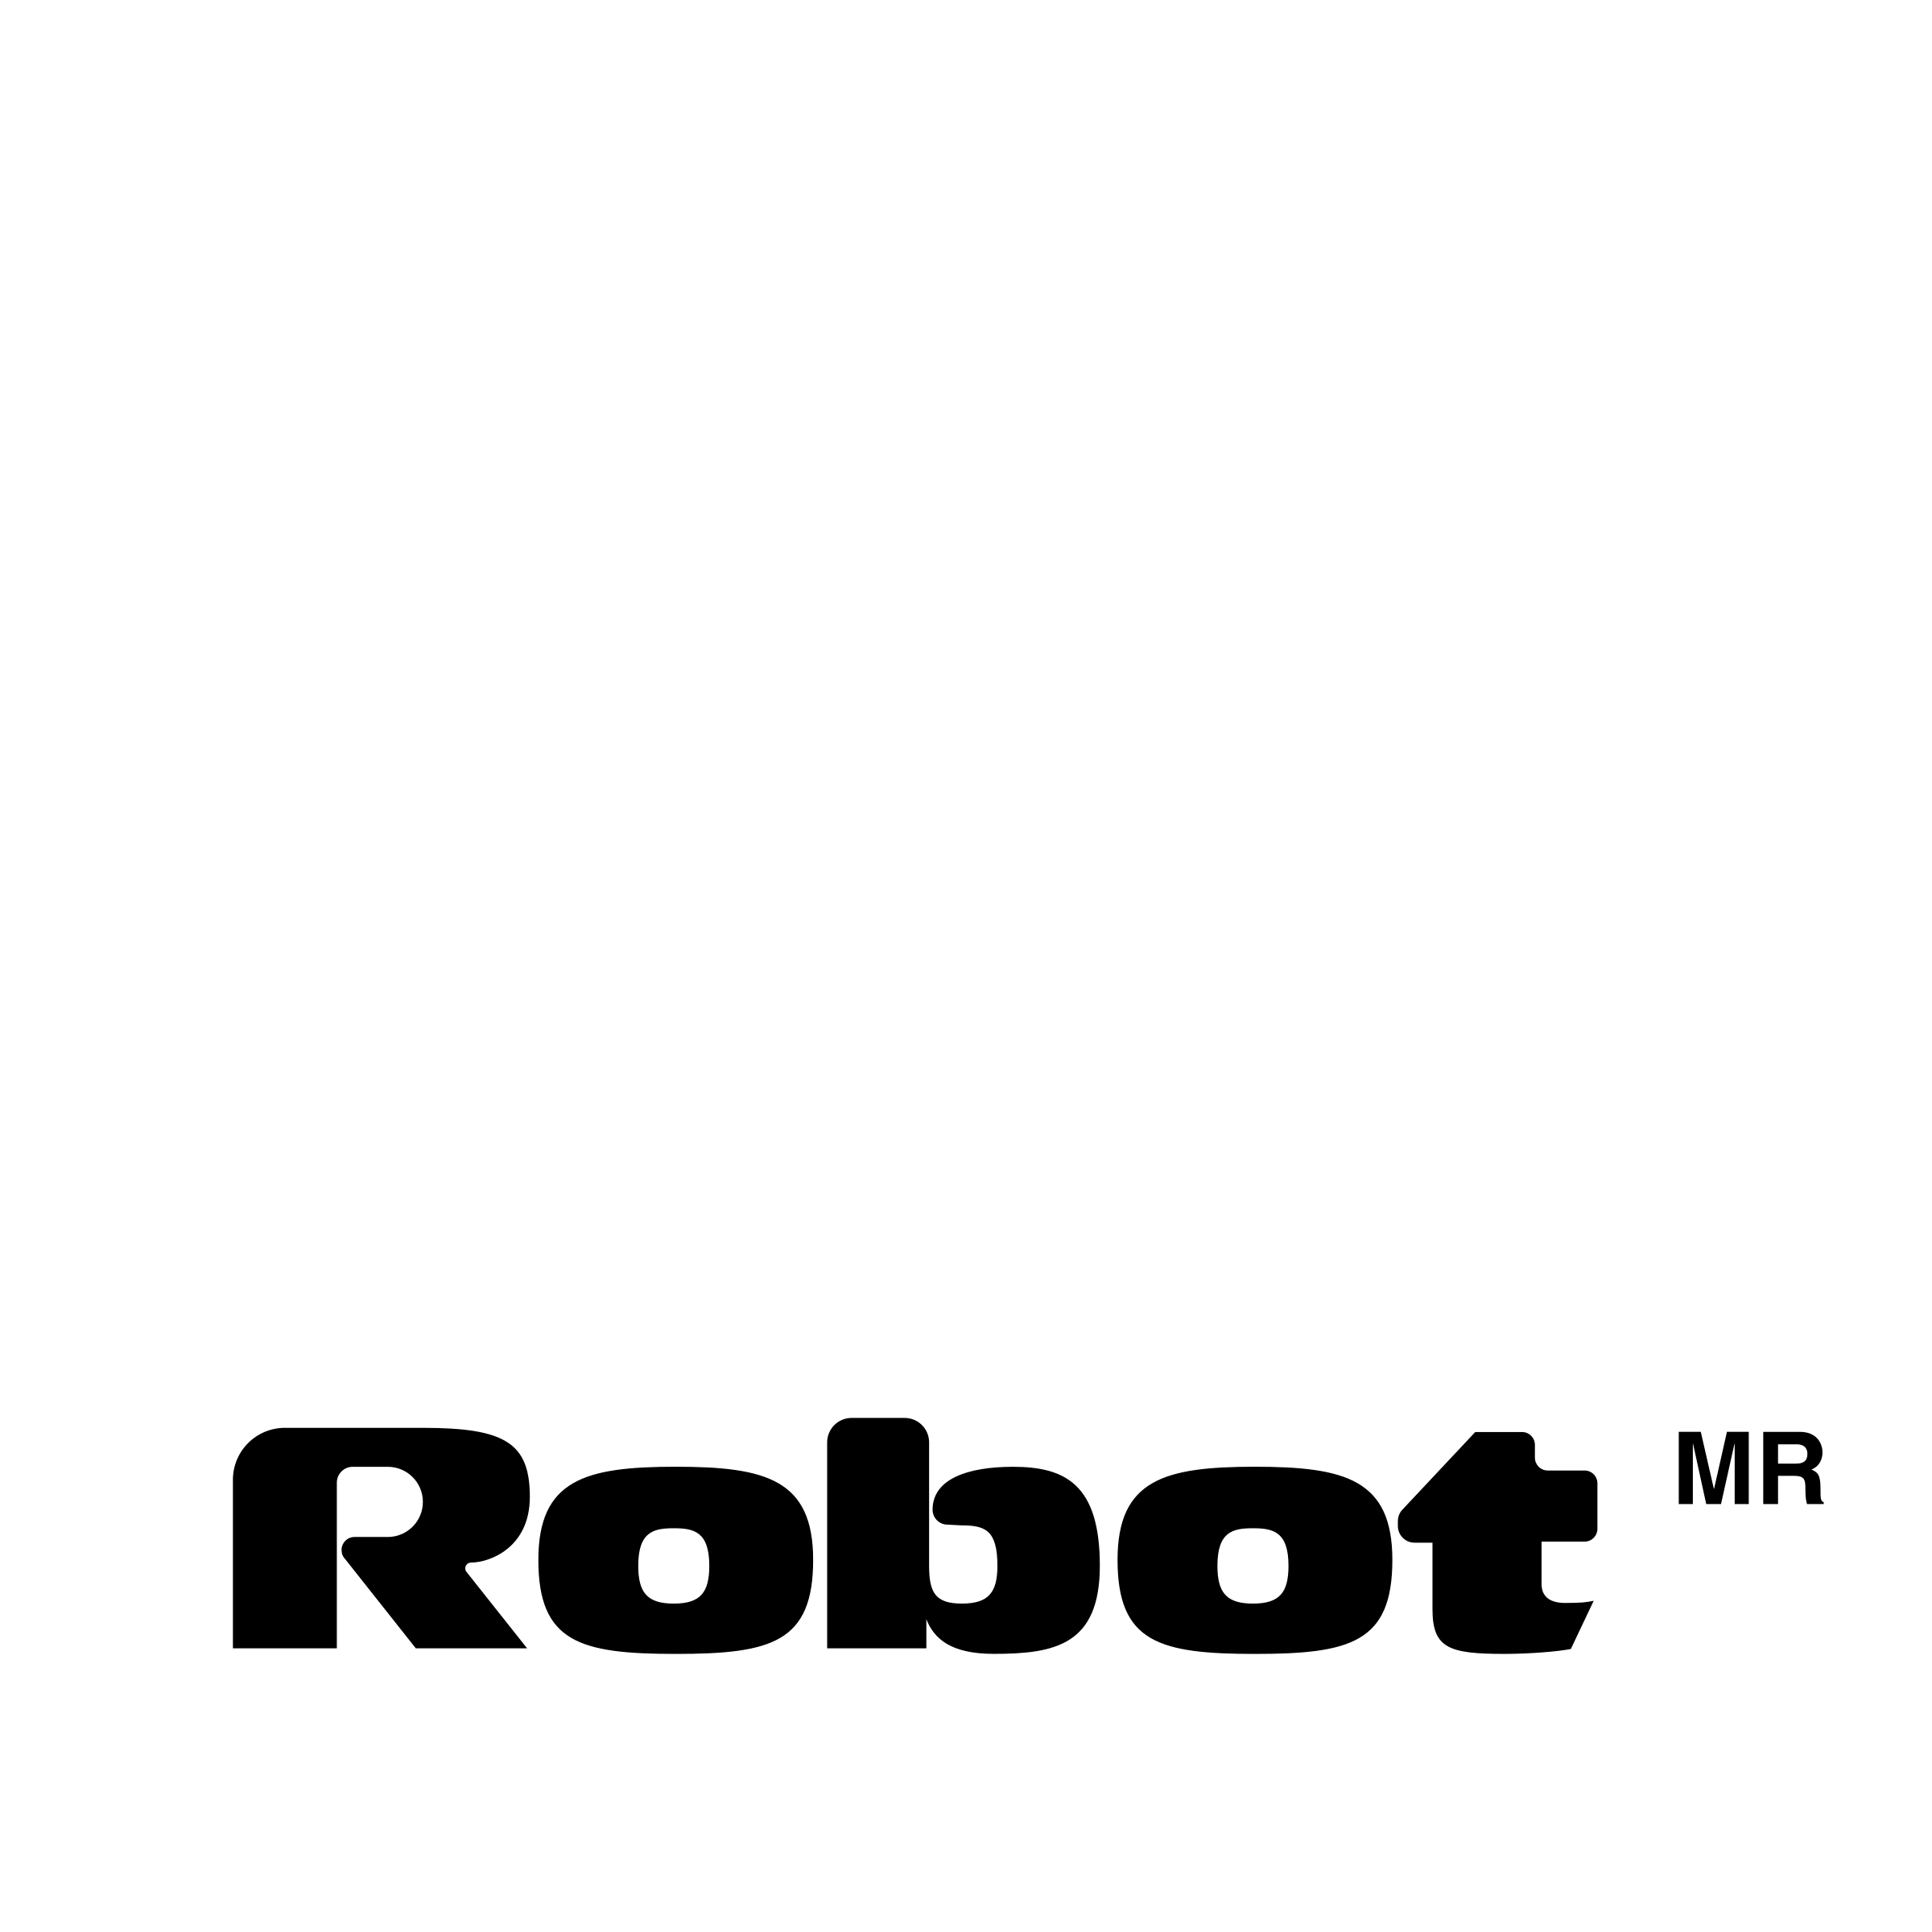 Black Robot Logo - Robot Logo PNG Transparent & SVG Vector - Freebie Supply